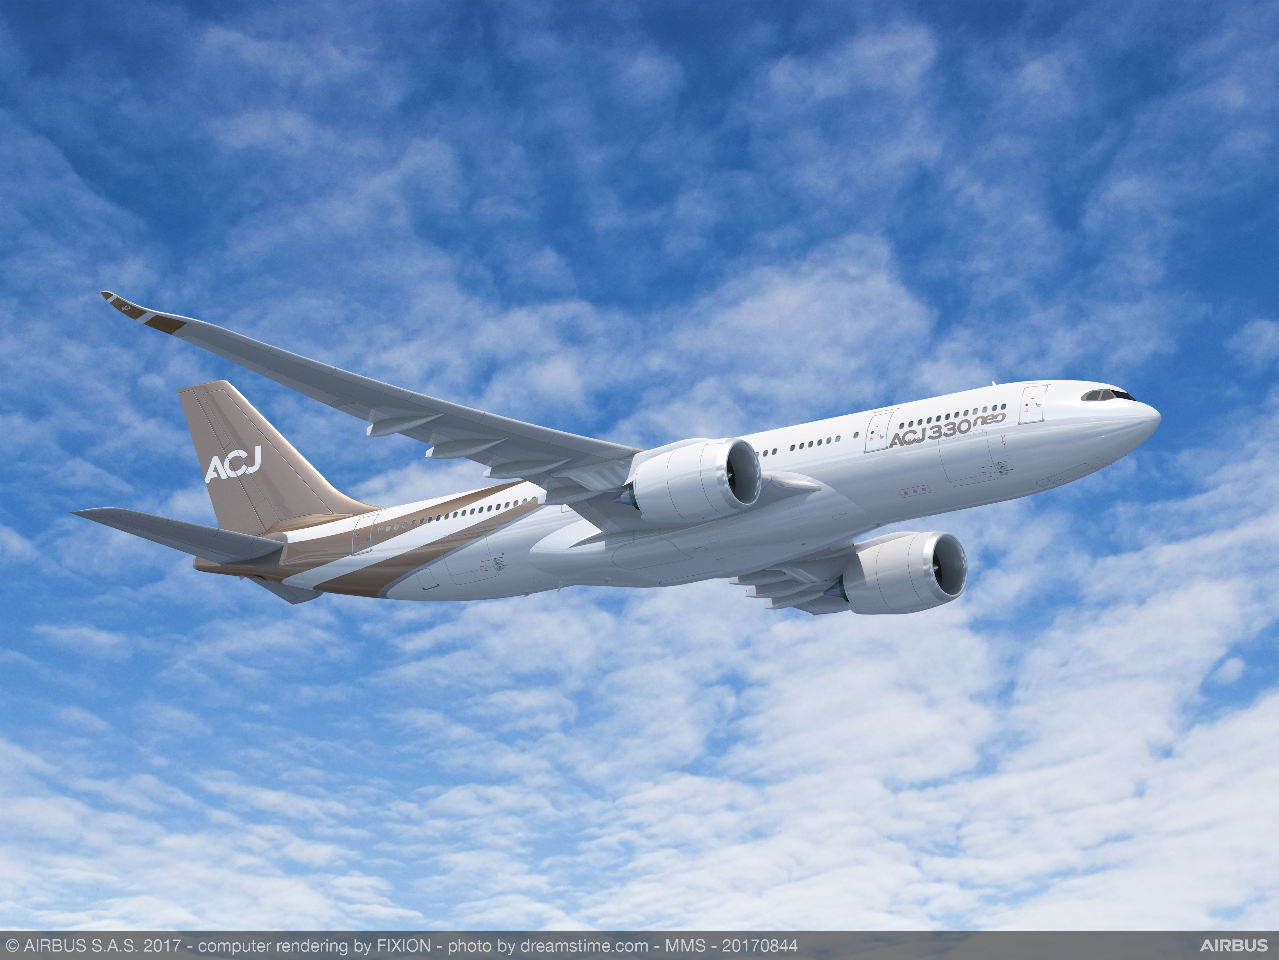 Airbus lance une version "corporate jet" de l'A330neo